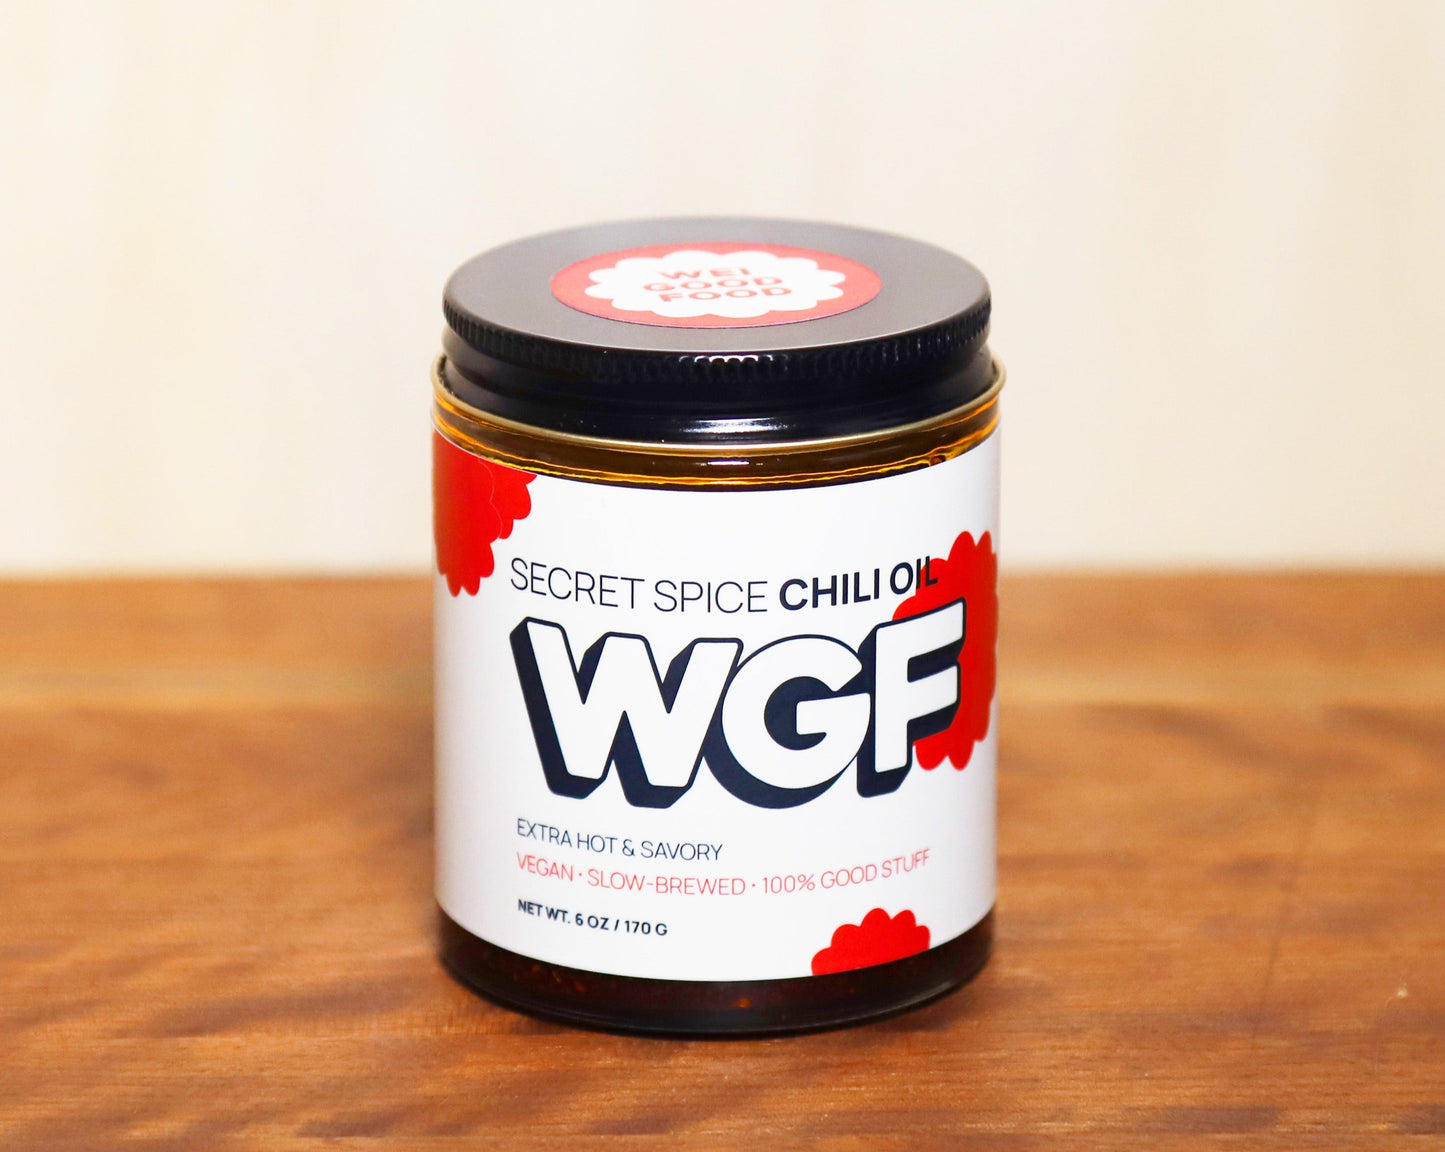 Secret Spice Chili Oil